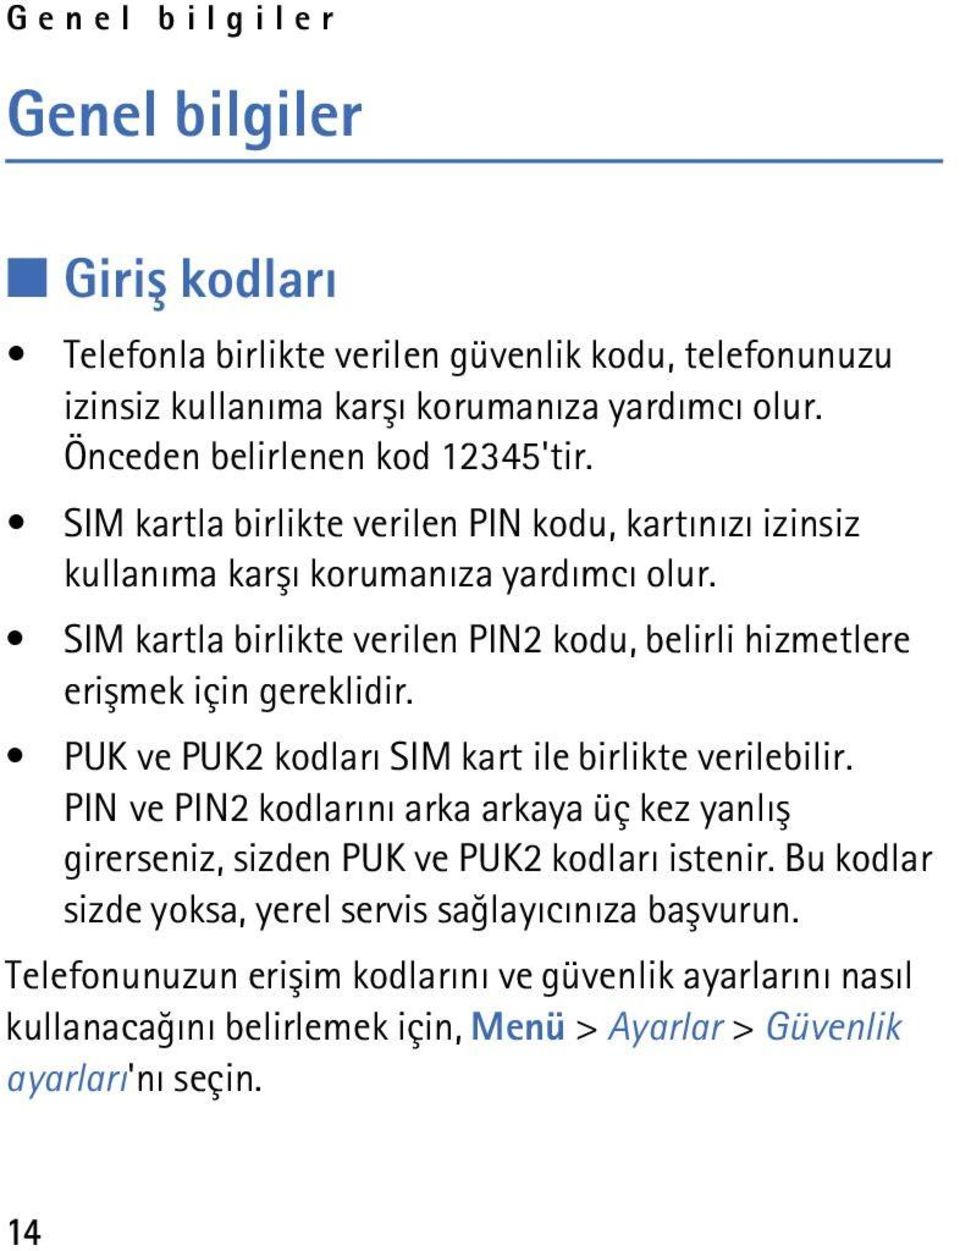 SIM kartla birlikte verilen PIN2 kodu, belirli hizmetlere eriþmek için gereklidir. PUK ve PUK2 kodlarý SIM kart ile birlikte verilebilir.